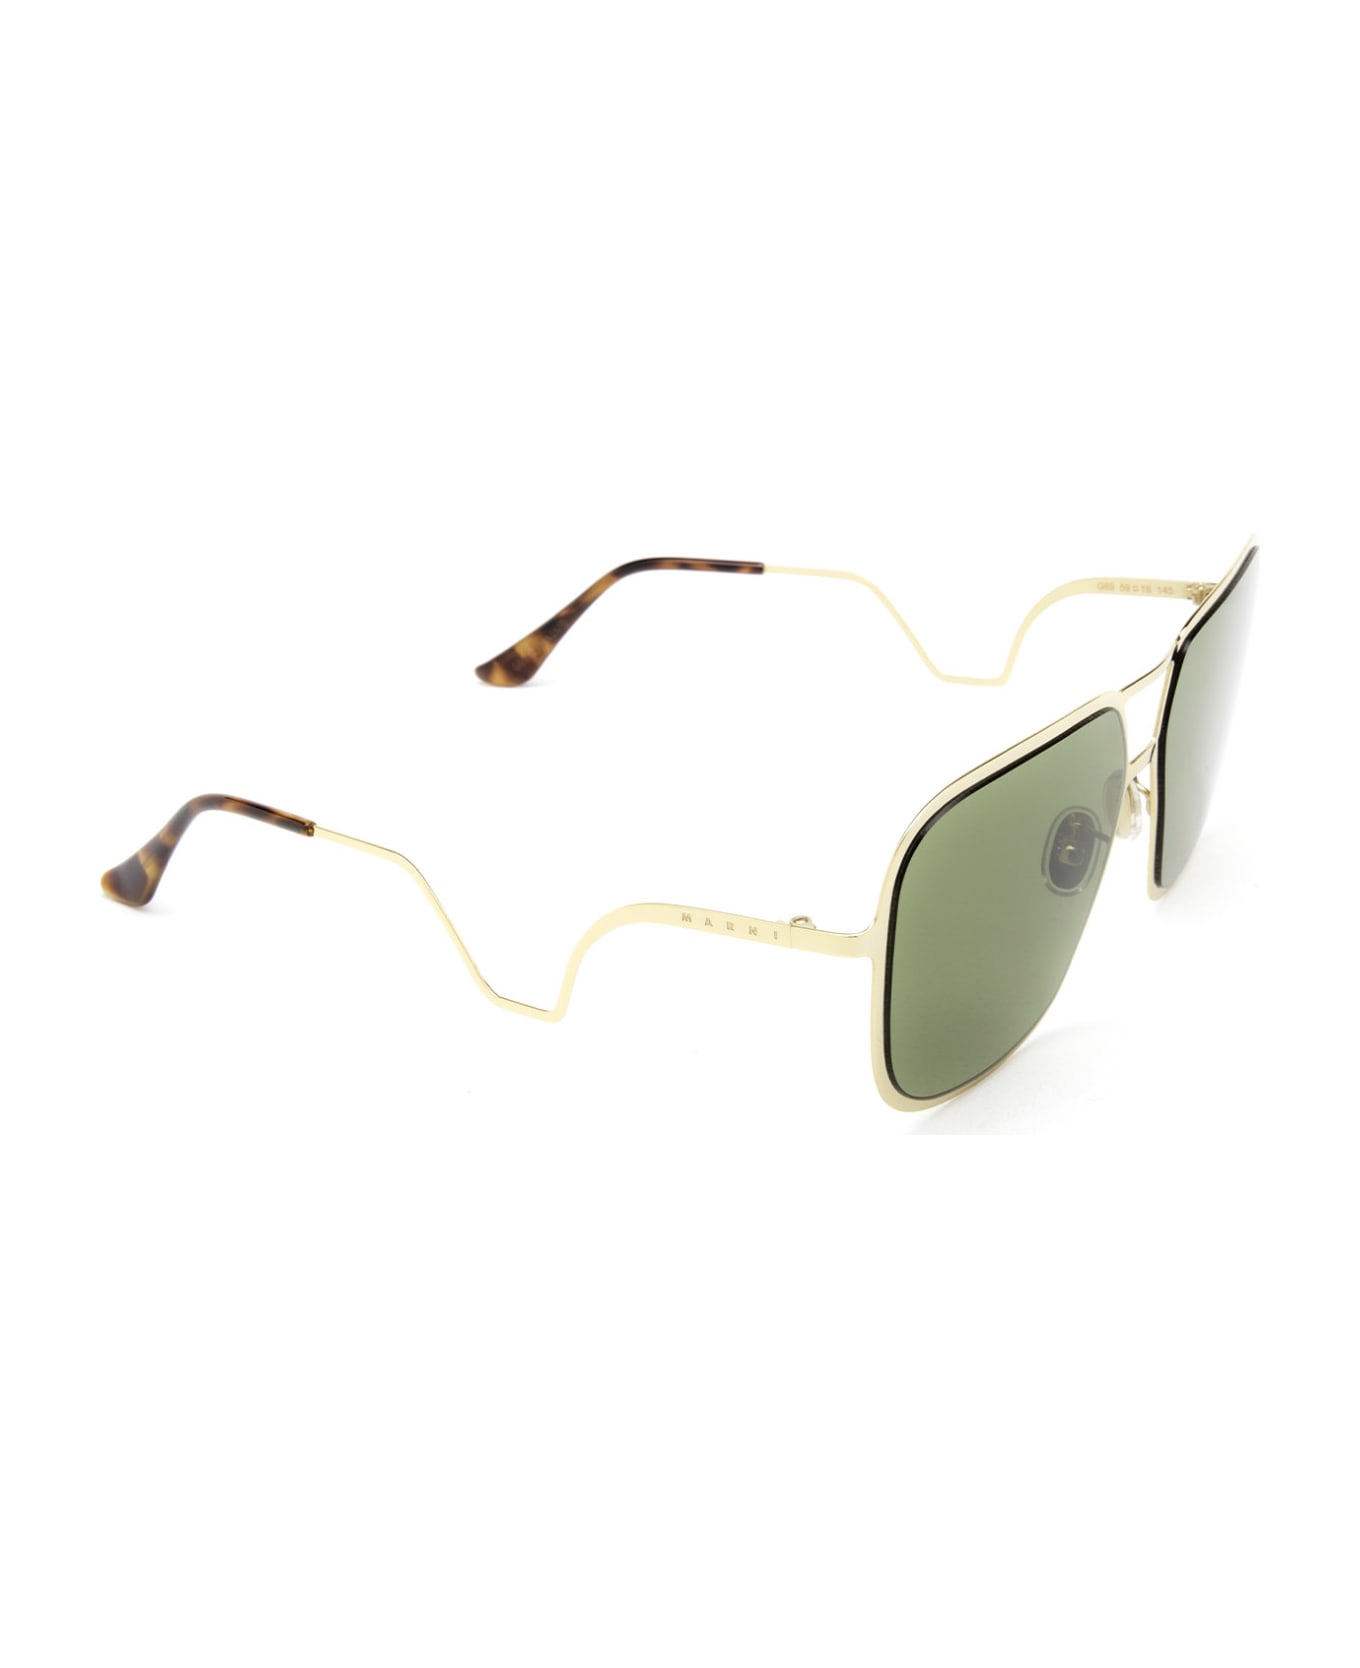 Marni Eyewear Ha Long Bay Green Sunglasses - Green